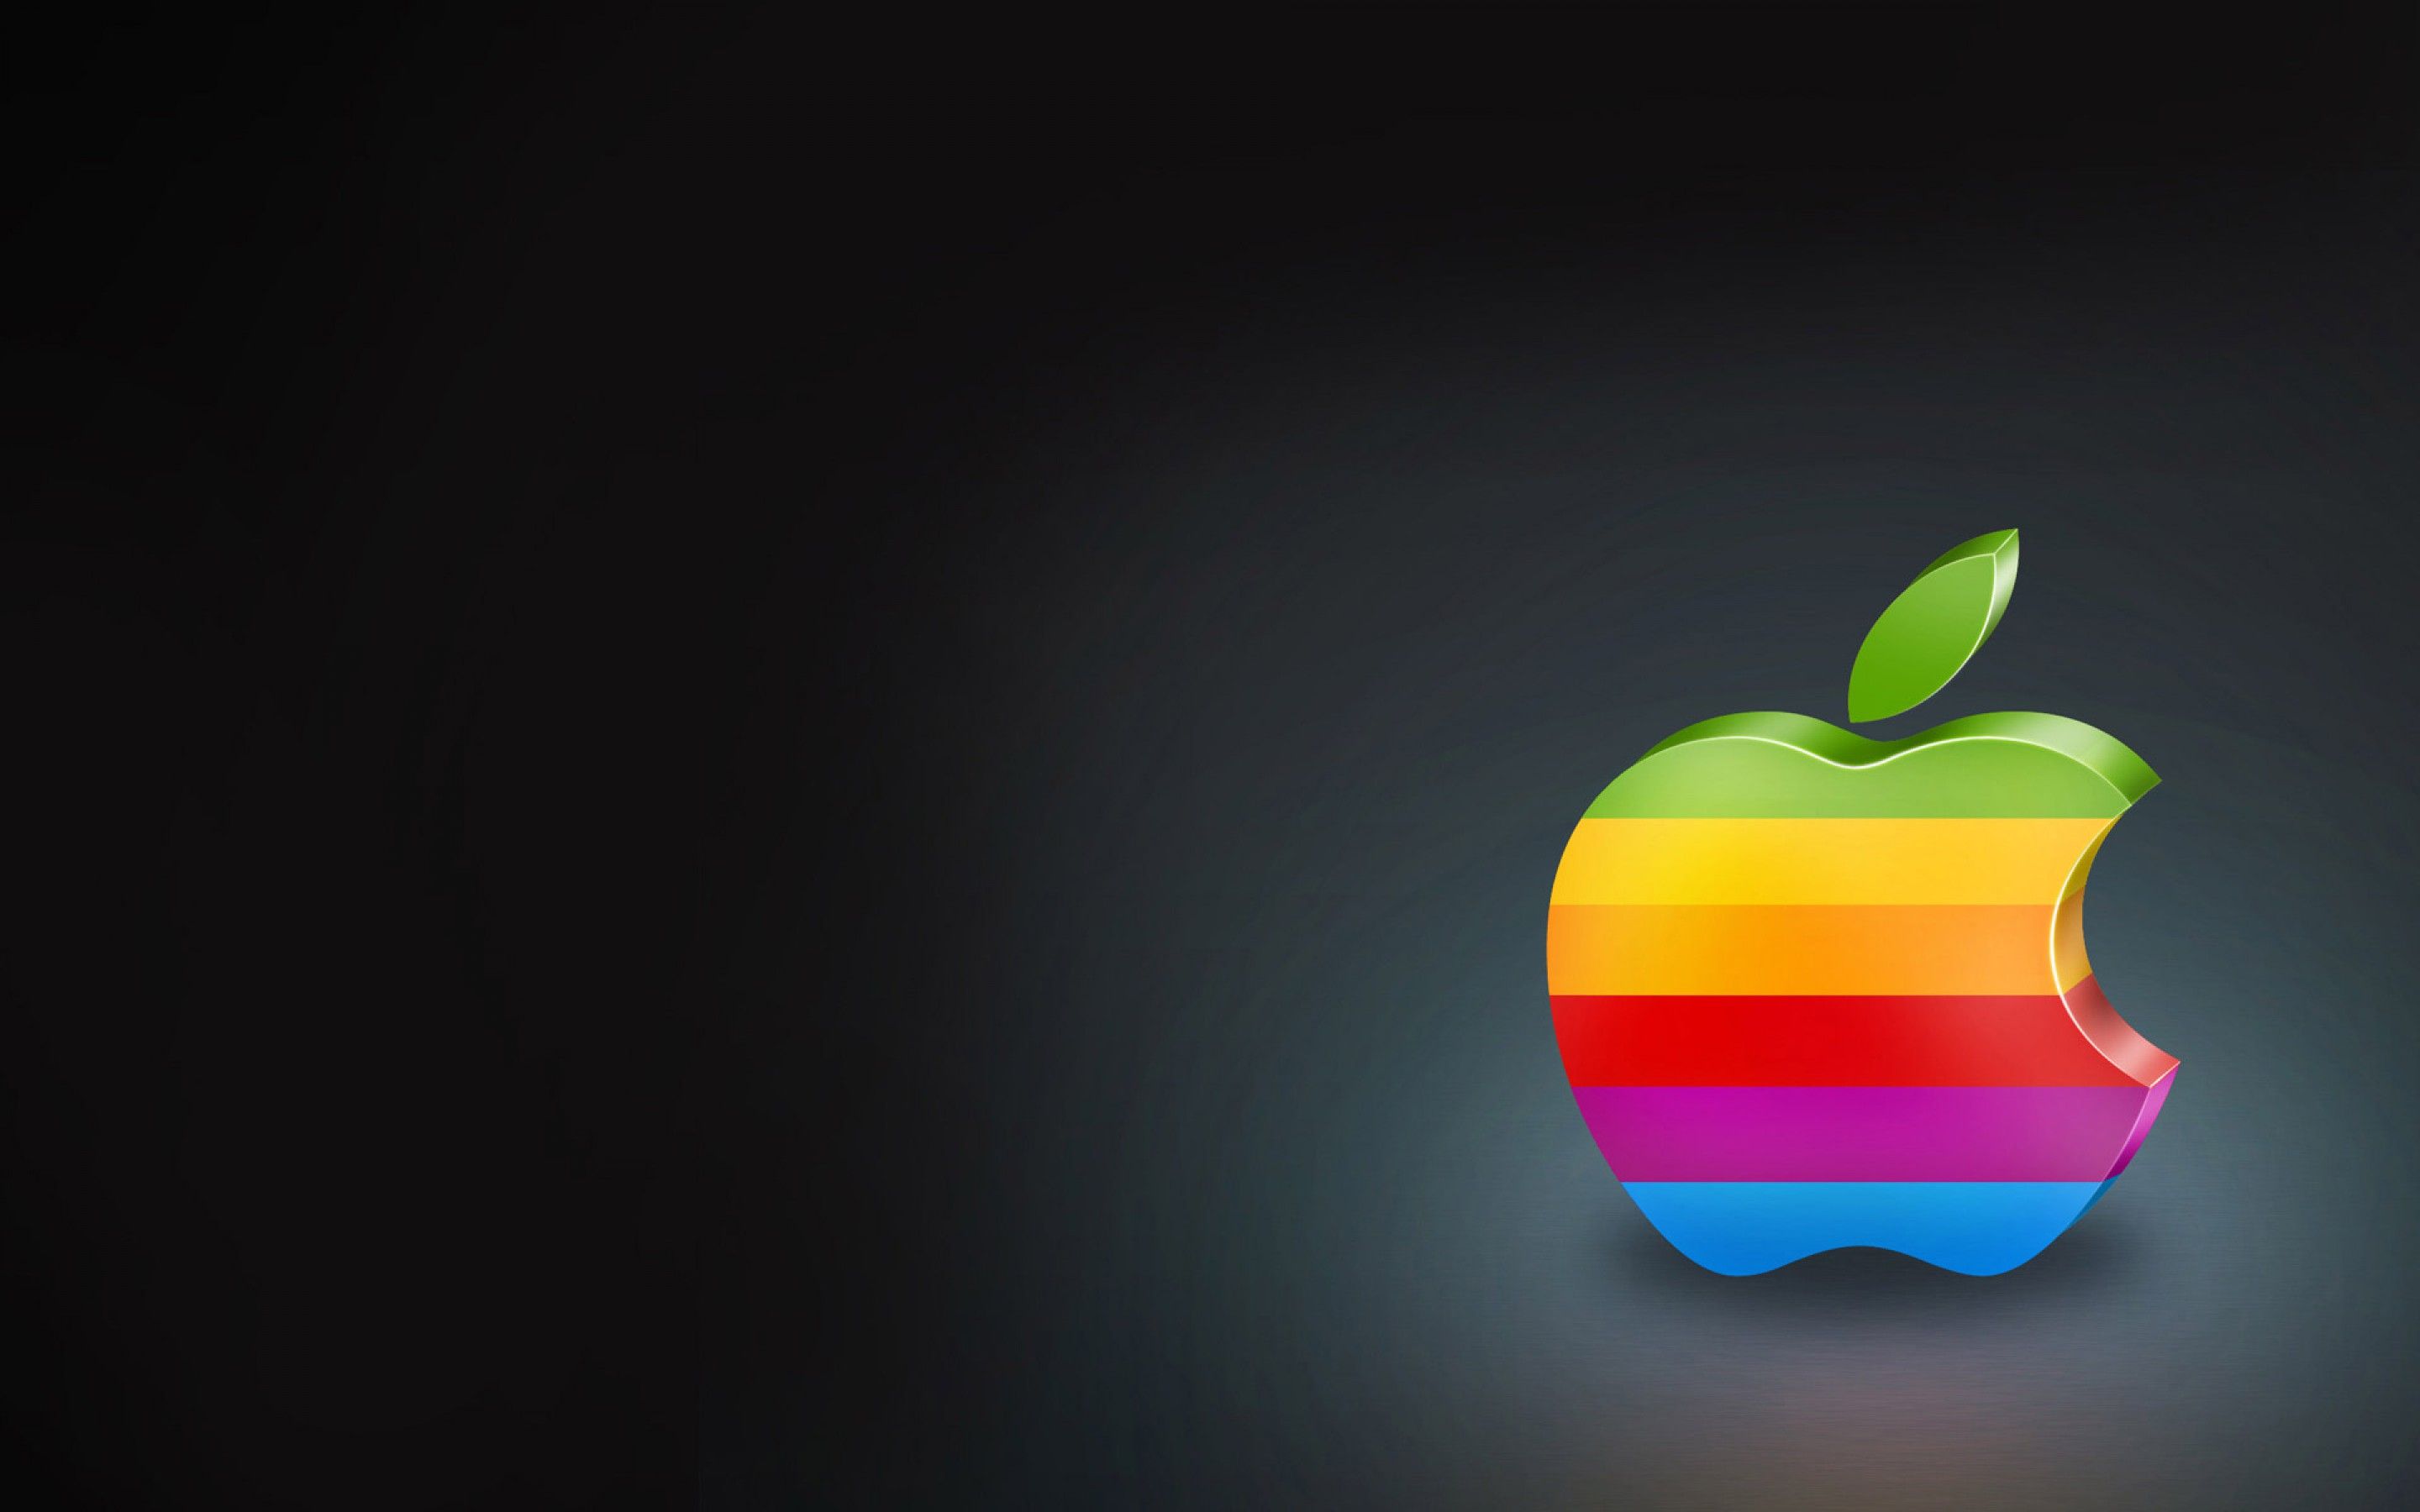 Обои айфон 1. Логотип Apple. Яблочко Эппл. Яблоко айфон. Фон Apple.